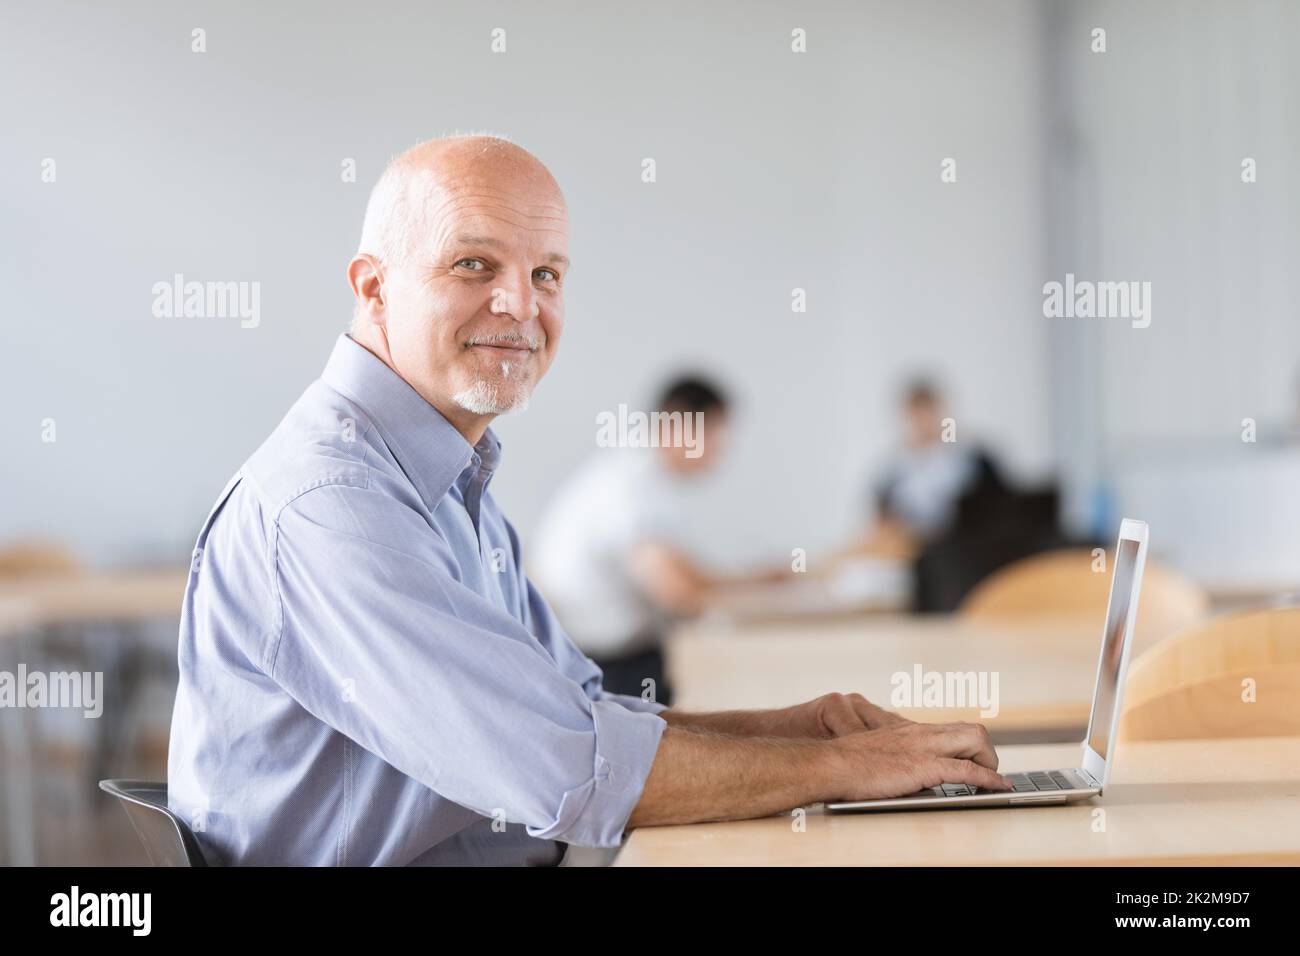 uomo maturo seduto e guardando la fotocamera mentre lavora sul notebook Foto Stock